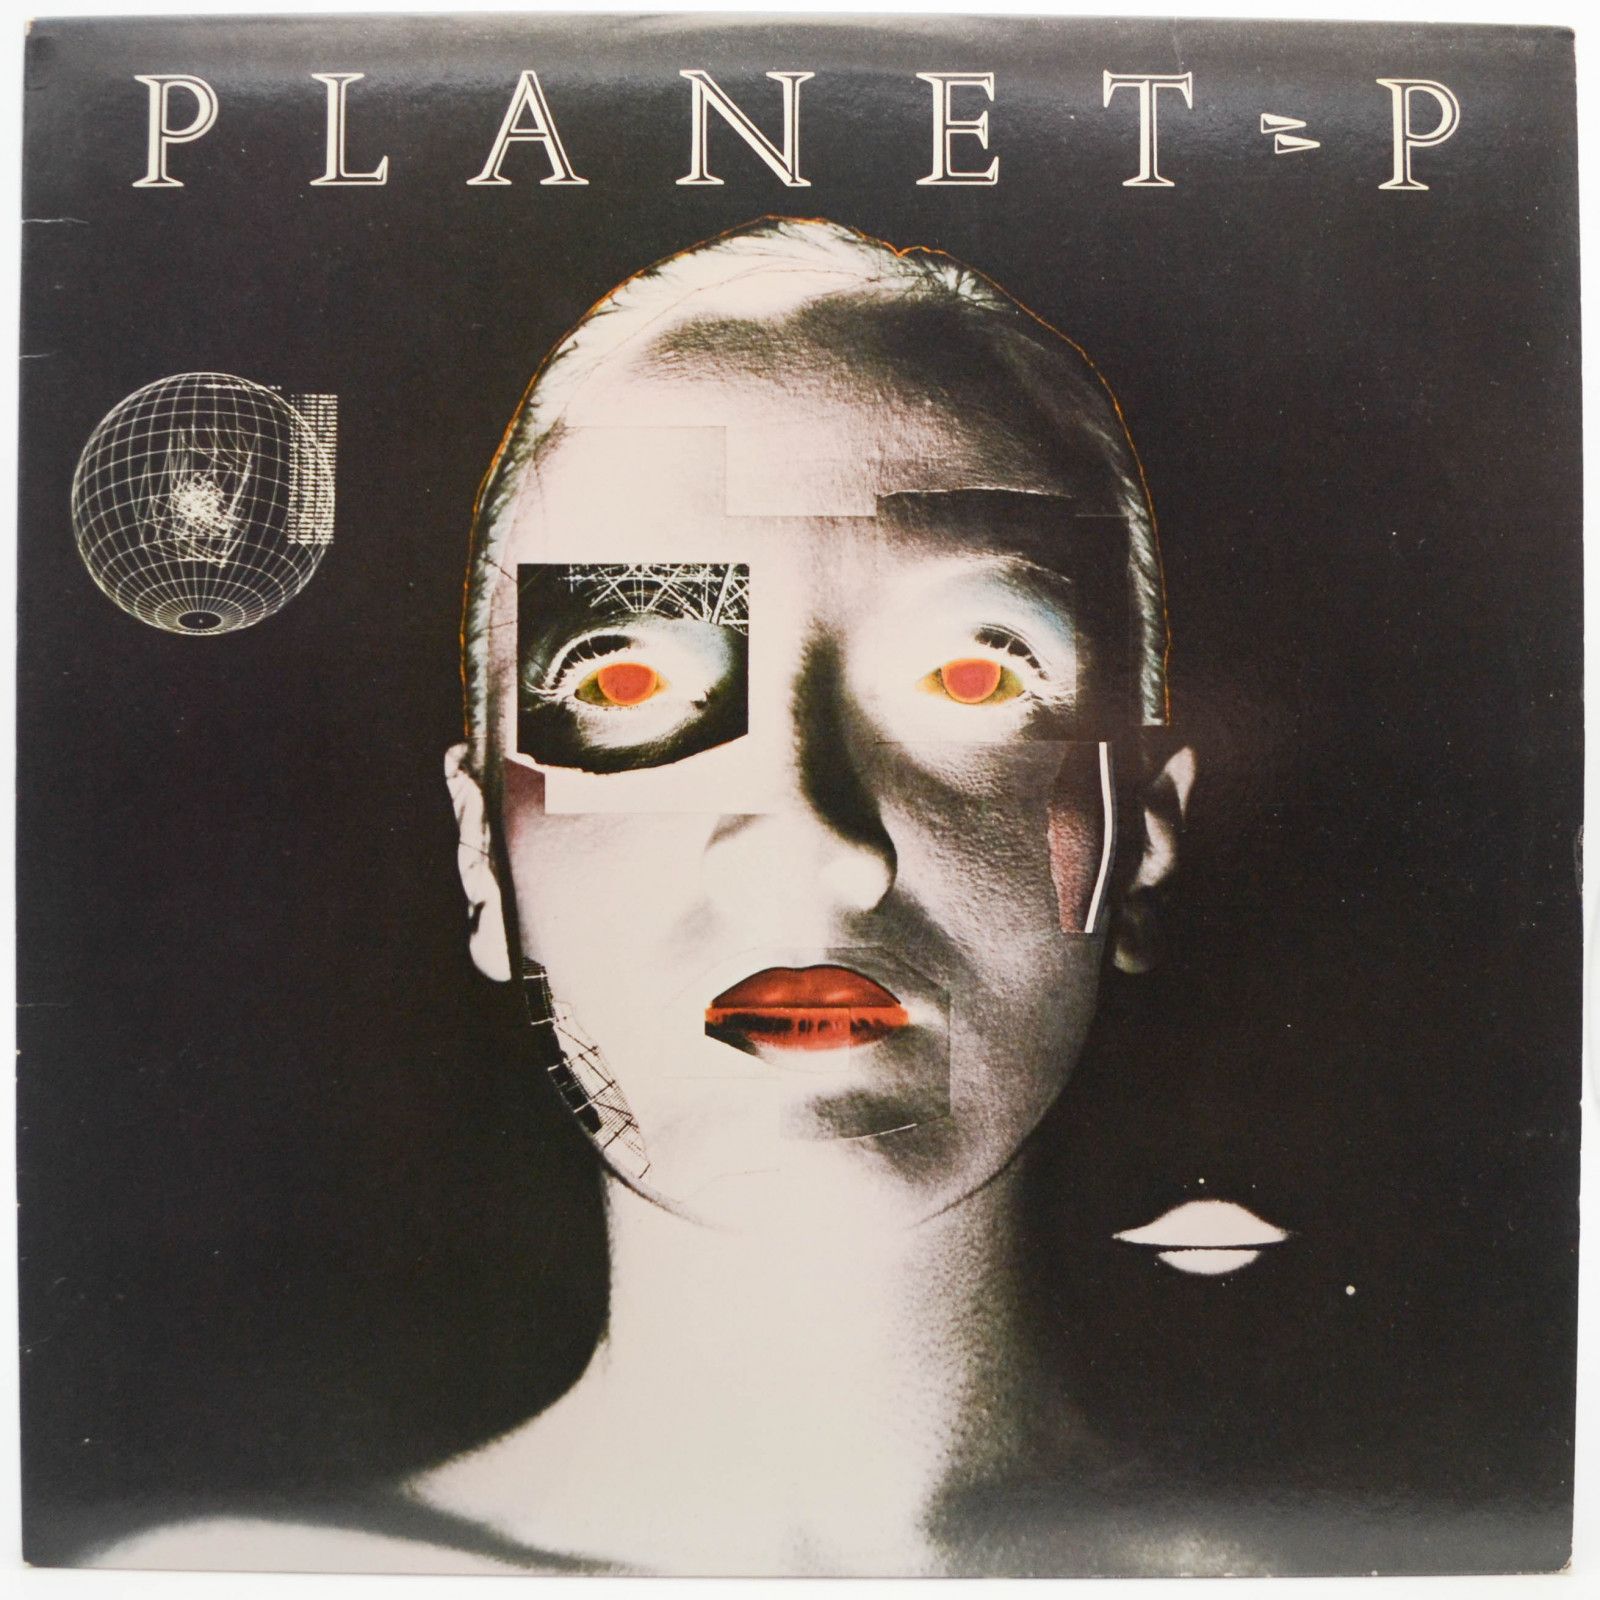 Planet P — Planet P (USA), 1983